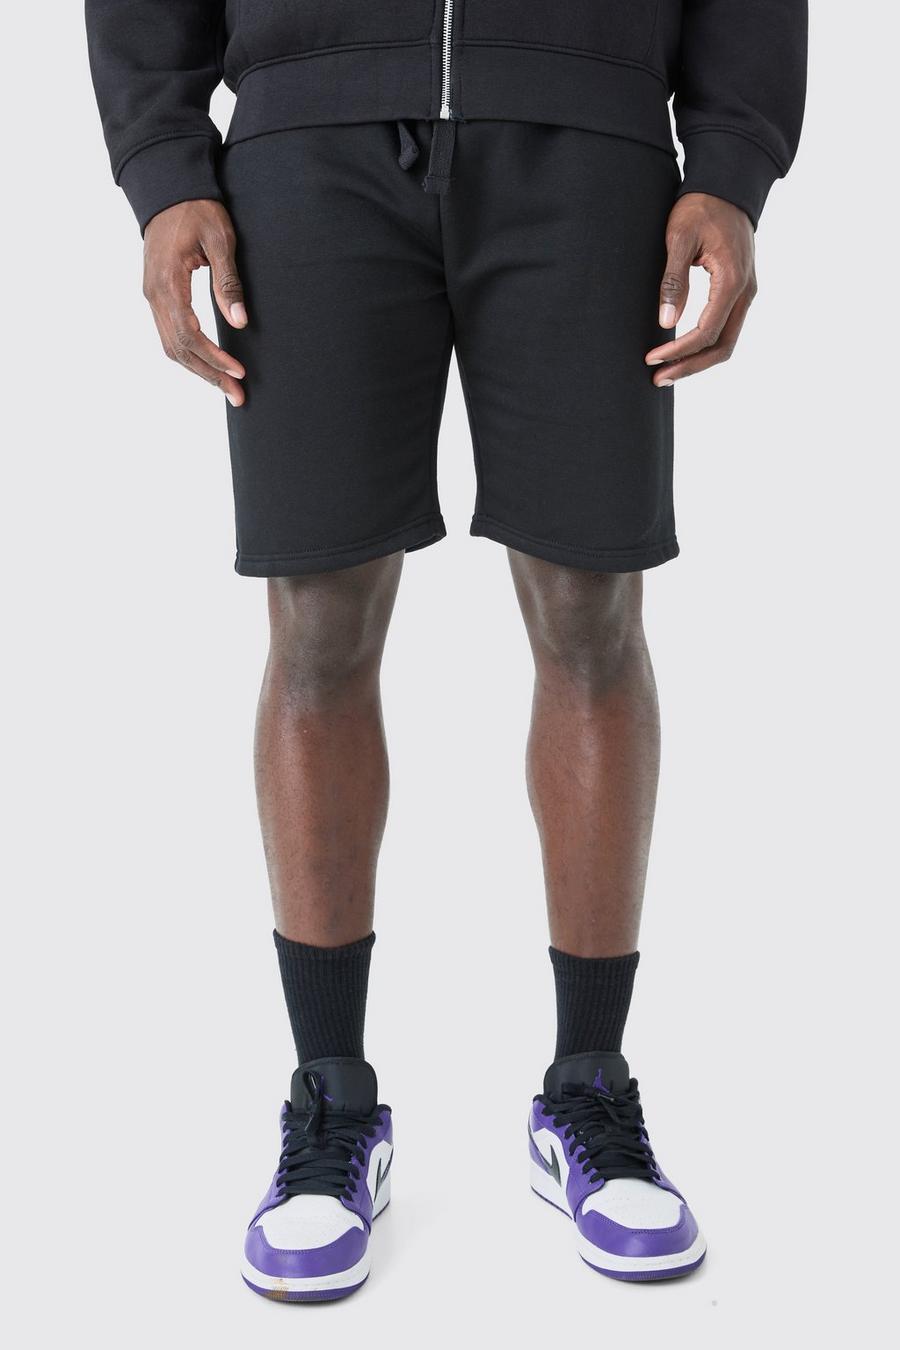 Black Middellange Jersey Slim Fit Shorts